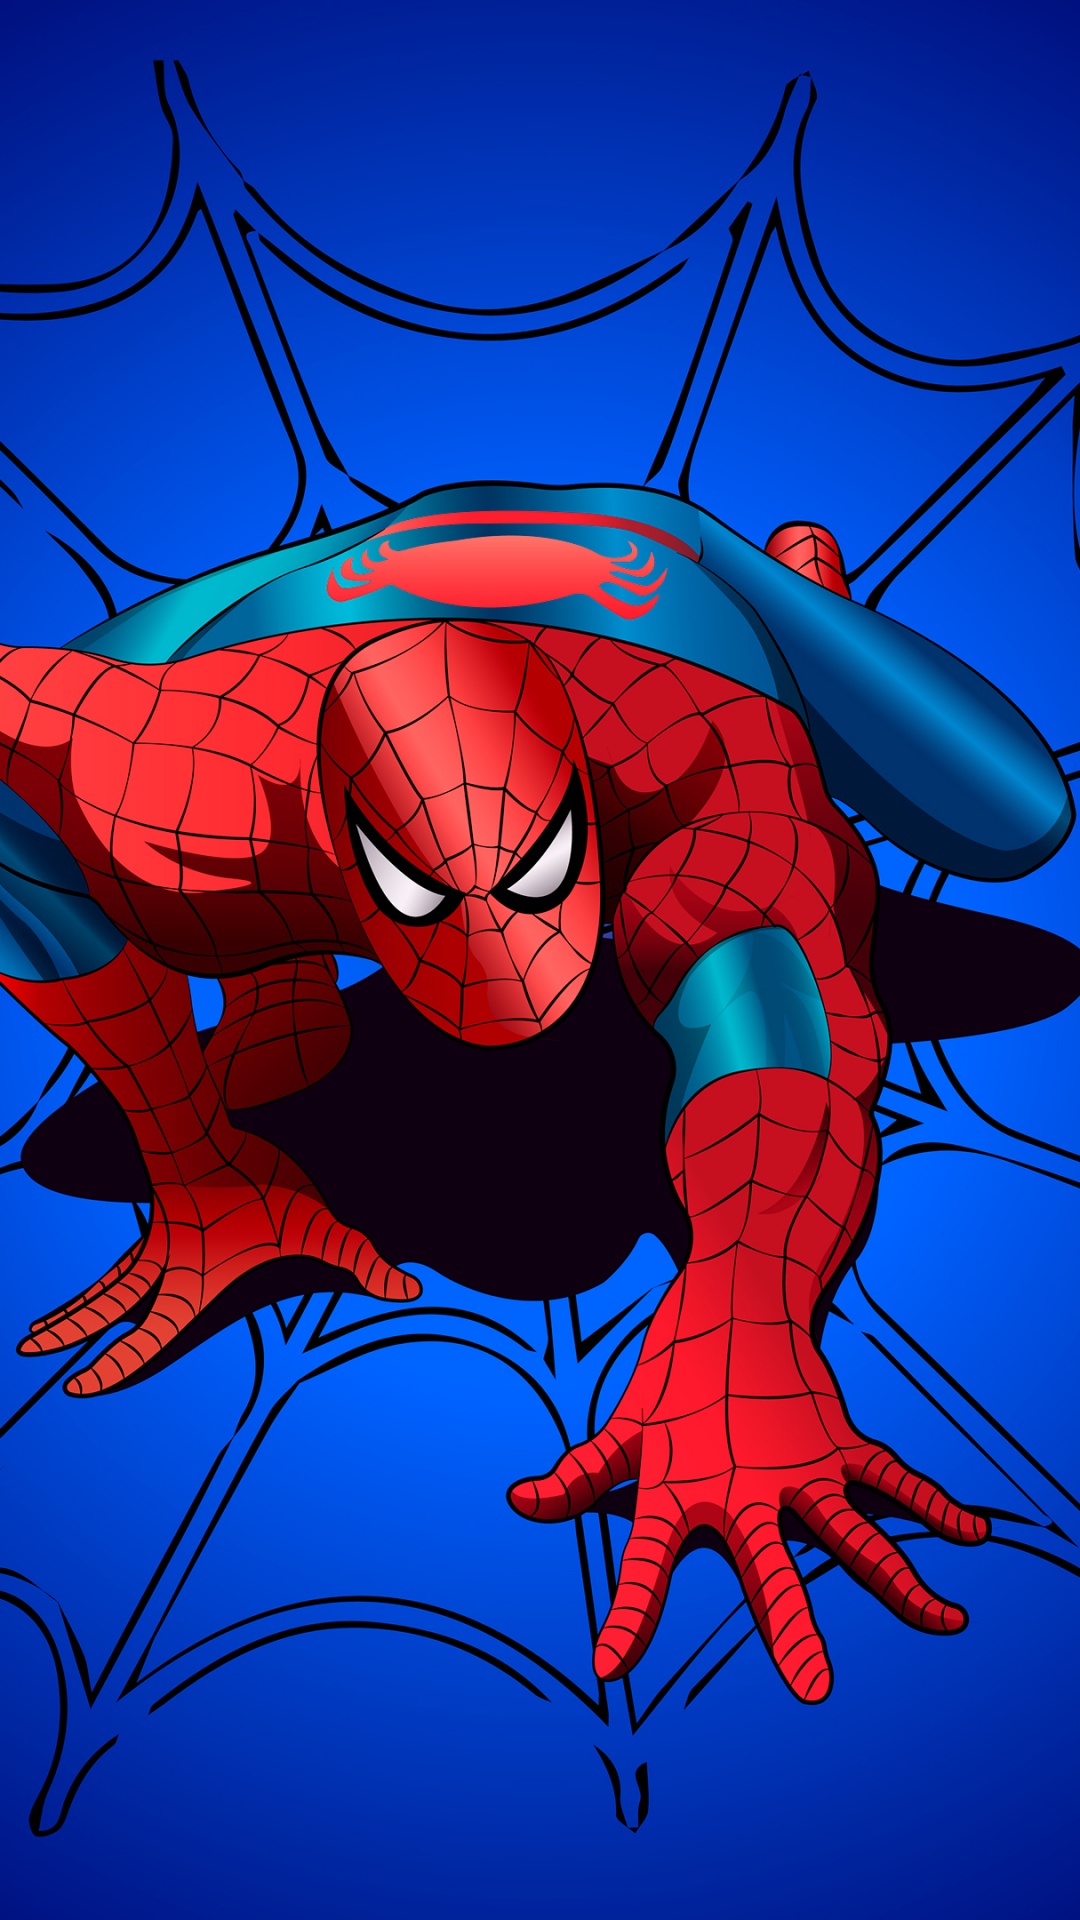 Hình nền Spider-Man với cái nhìn đầy nghị lực và sự dũng cảm của siêu anh hùng sẽ khiến bạn cảm thấy mạnh mẽ và tự tin hơn chỉ sau một nháy mắt. Hãy thưởng thức hình ảnh này và để trí tưởng tượng của bạn thăng hoa với những cuộc phiêu lưu đầy kịch tính của chàng người nhện!